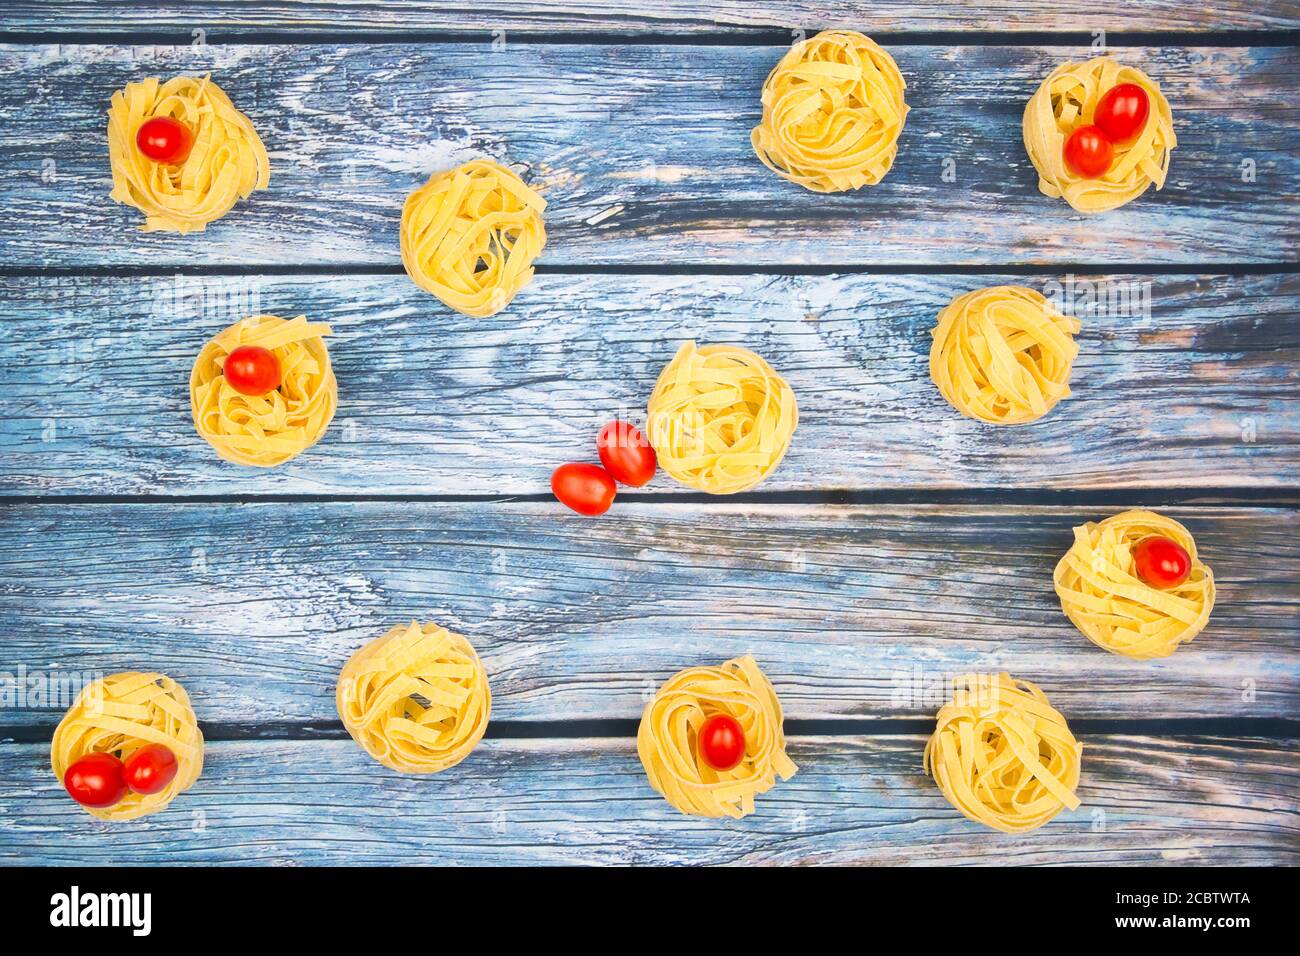 Nester von Tagliatelle-Nudeln mit eiförmigen Mini-roma-Tomaten auf einem verwitterten bläulichen Tisch. Stockfoto